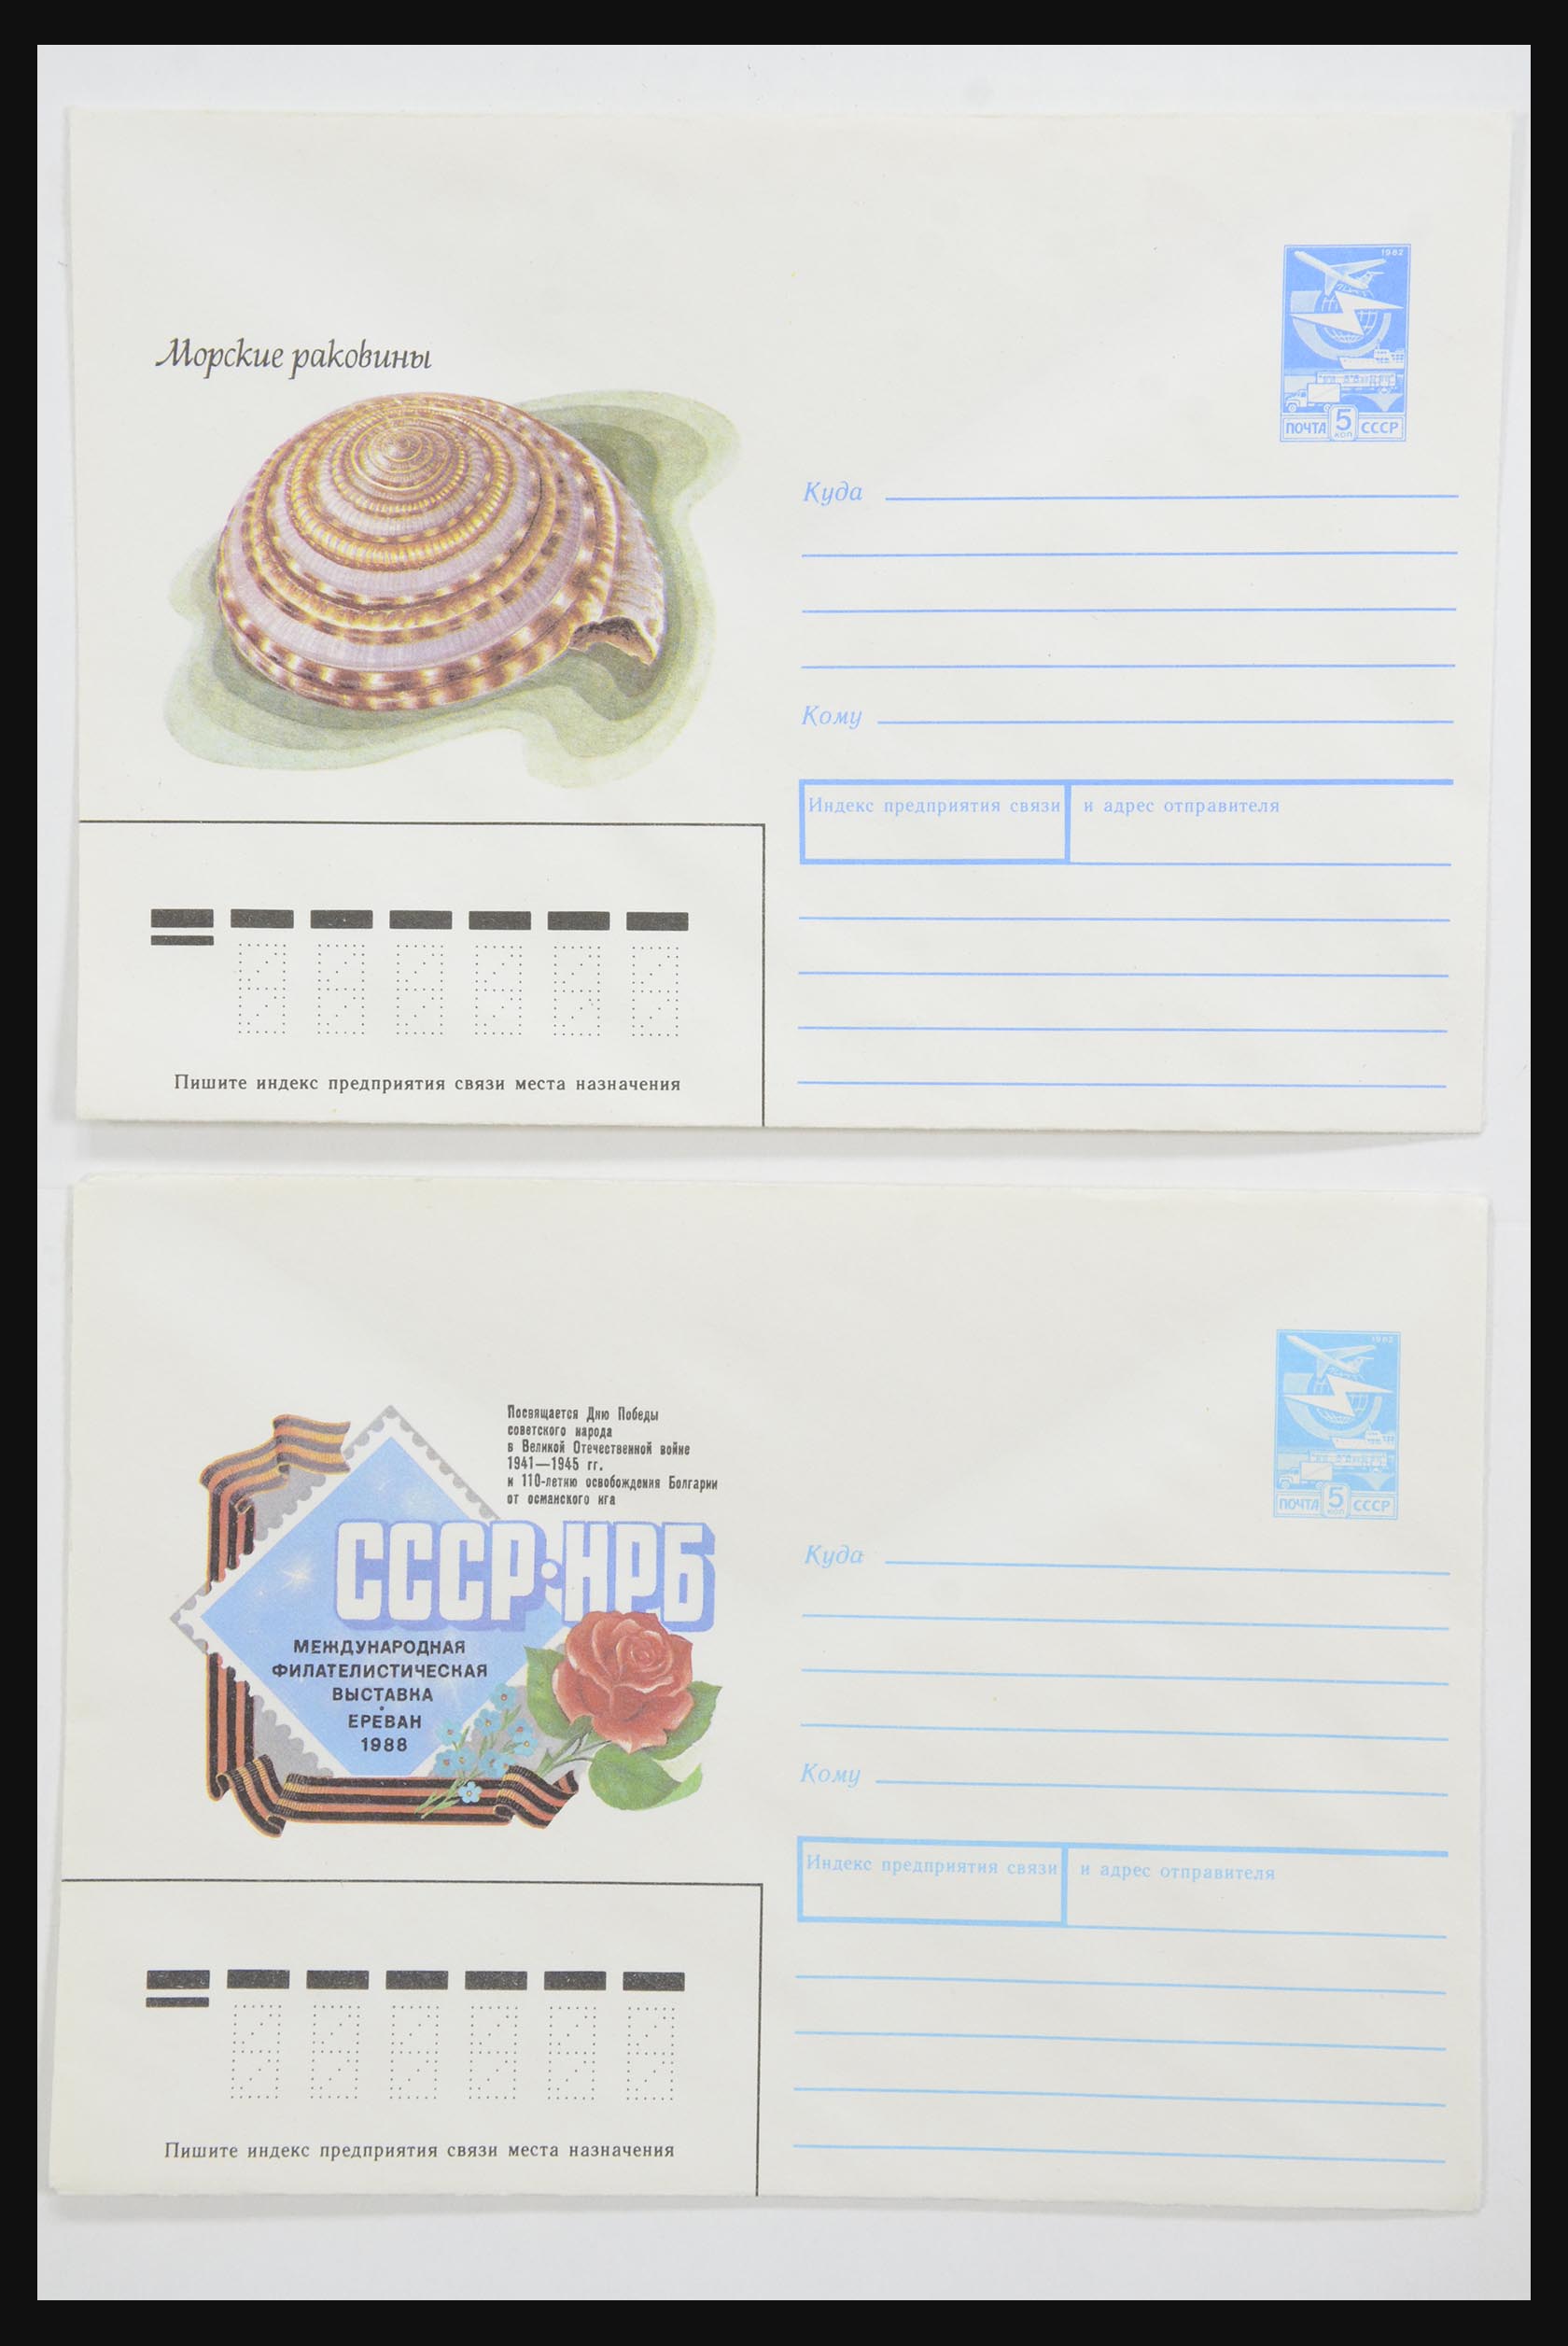 31928 0059 - 31928 Oost Europa brieven jaren 60/90.